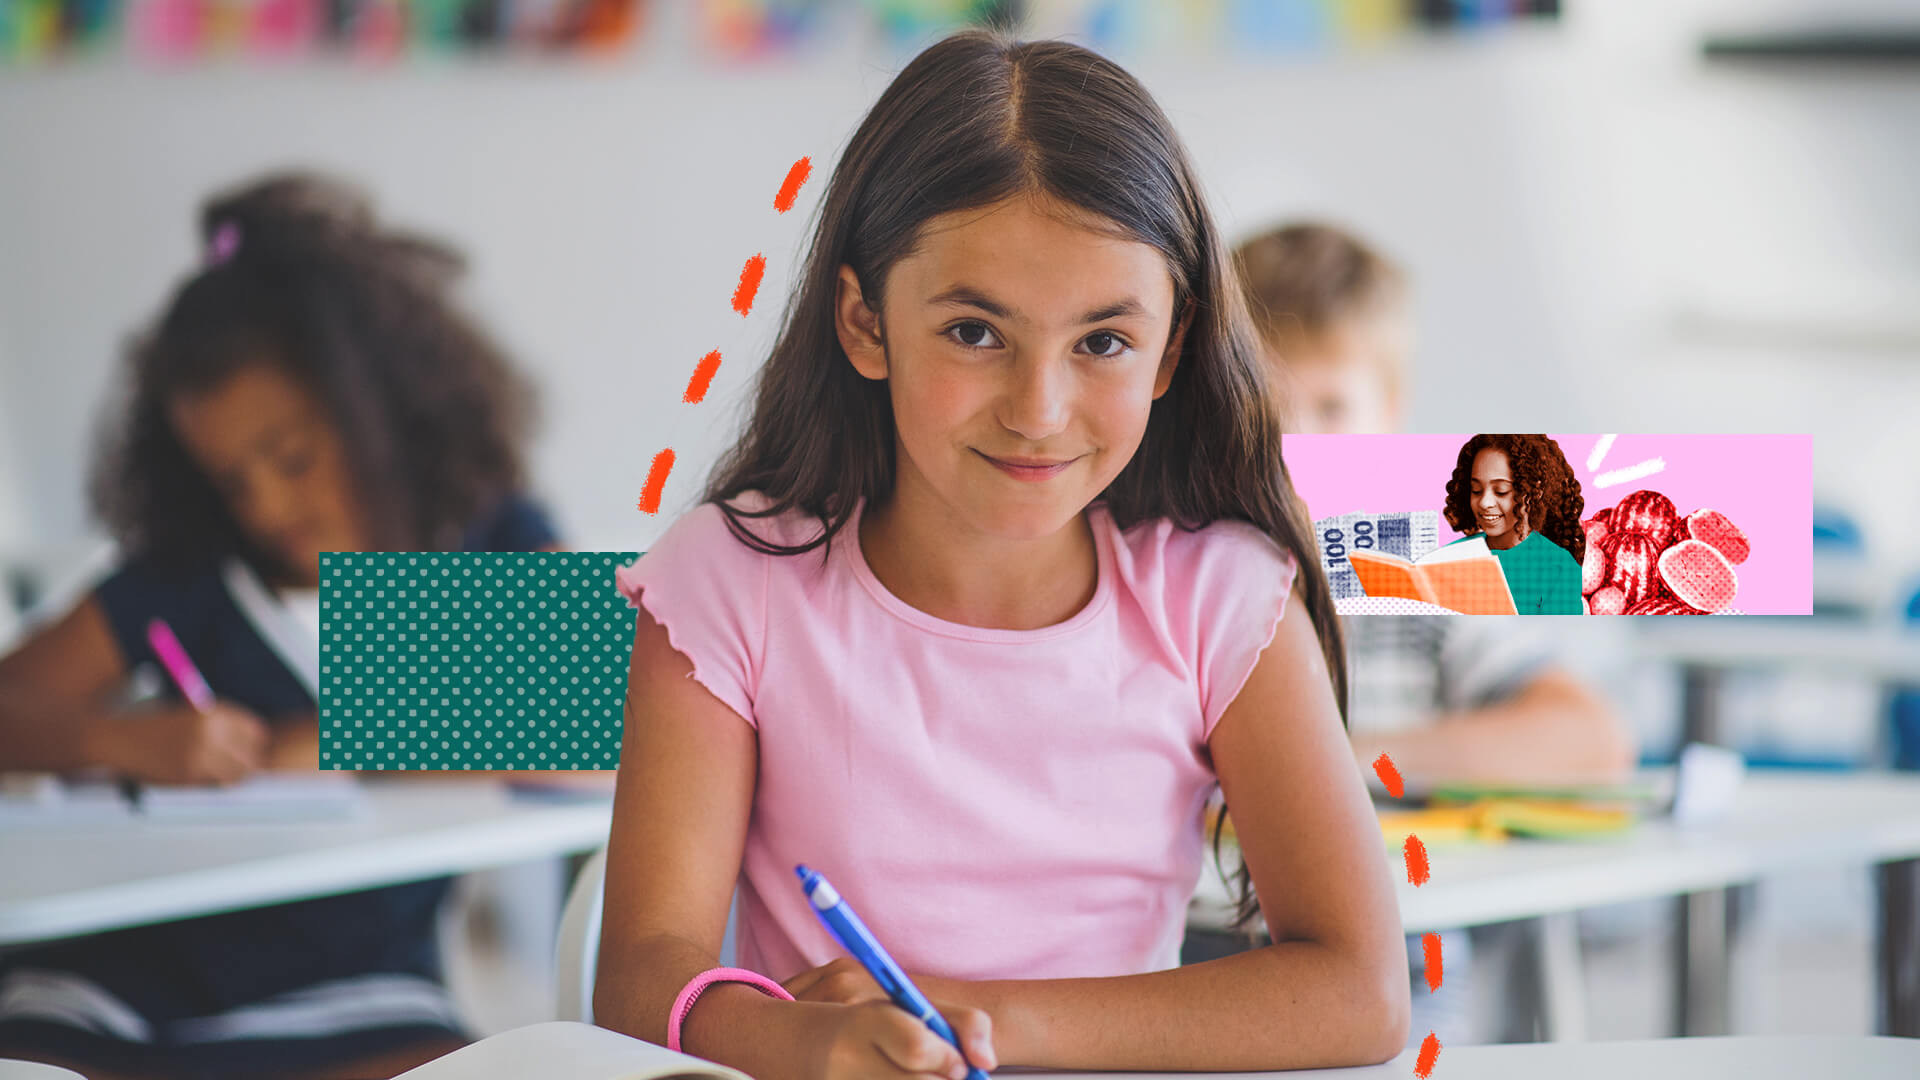 A imagem mostra uma menina branca de cabelos claros e olhos escuros. Ela está sentada na carteira da sala de aula, segurando uma caneta.